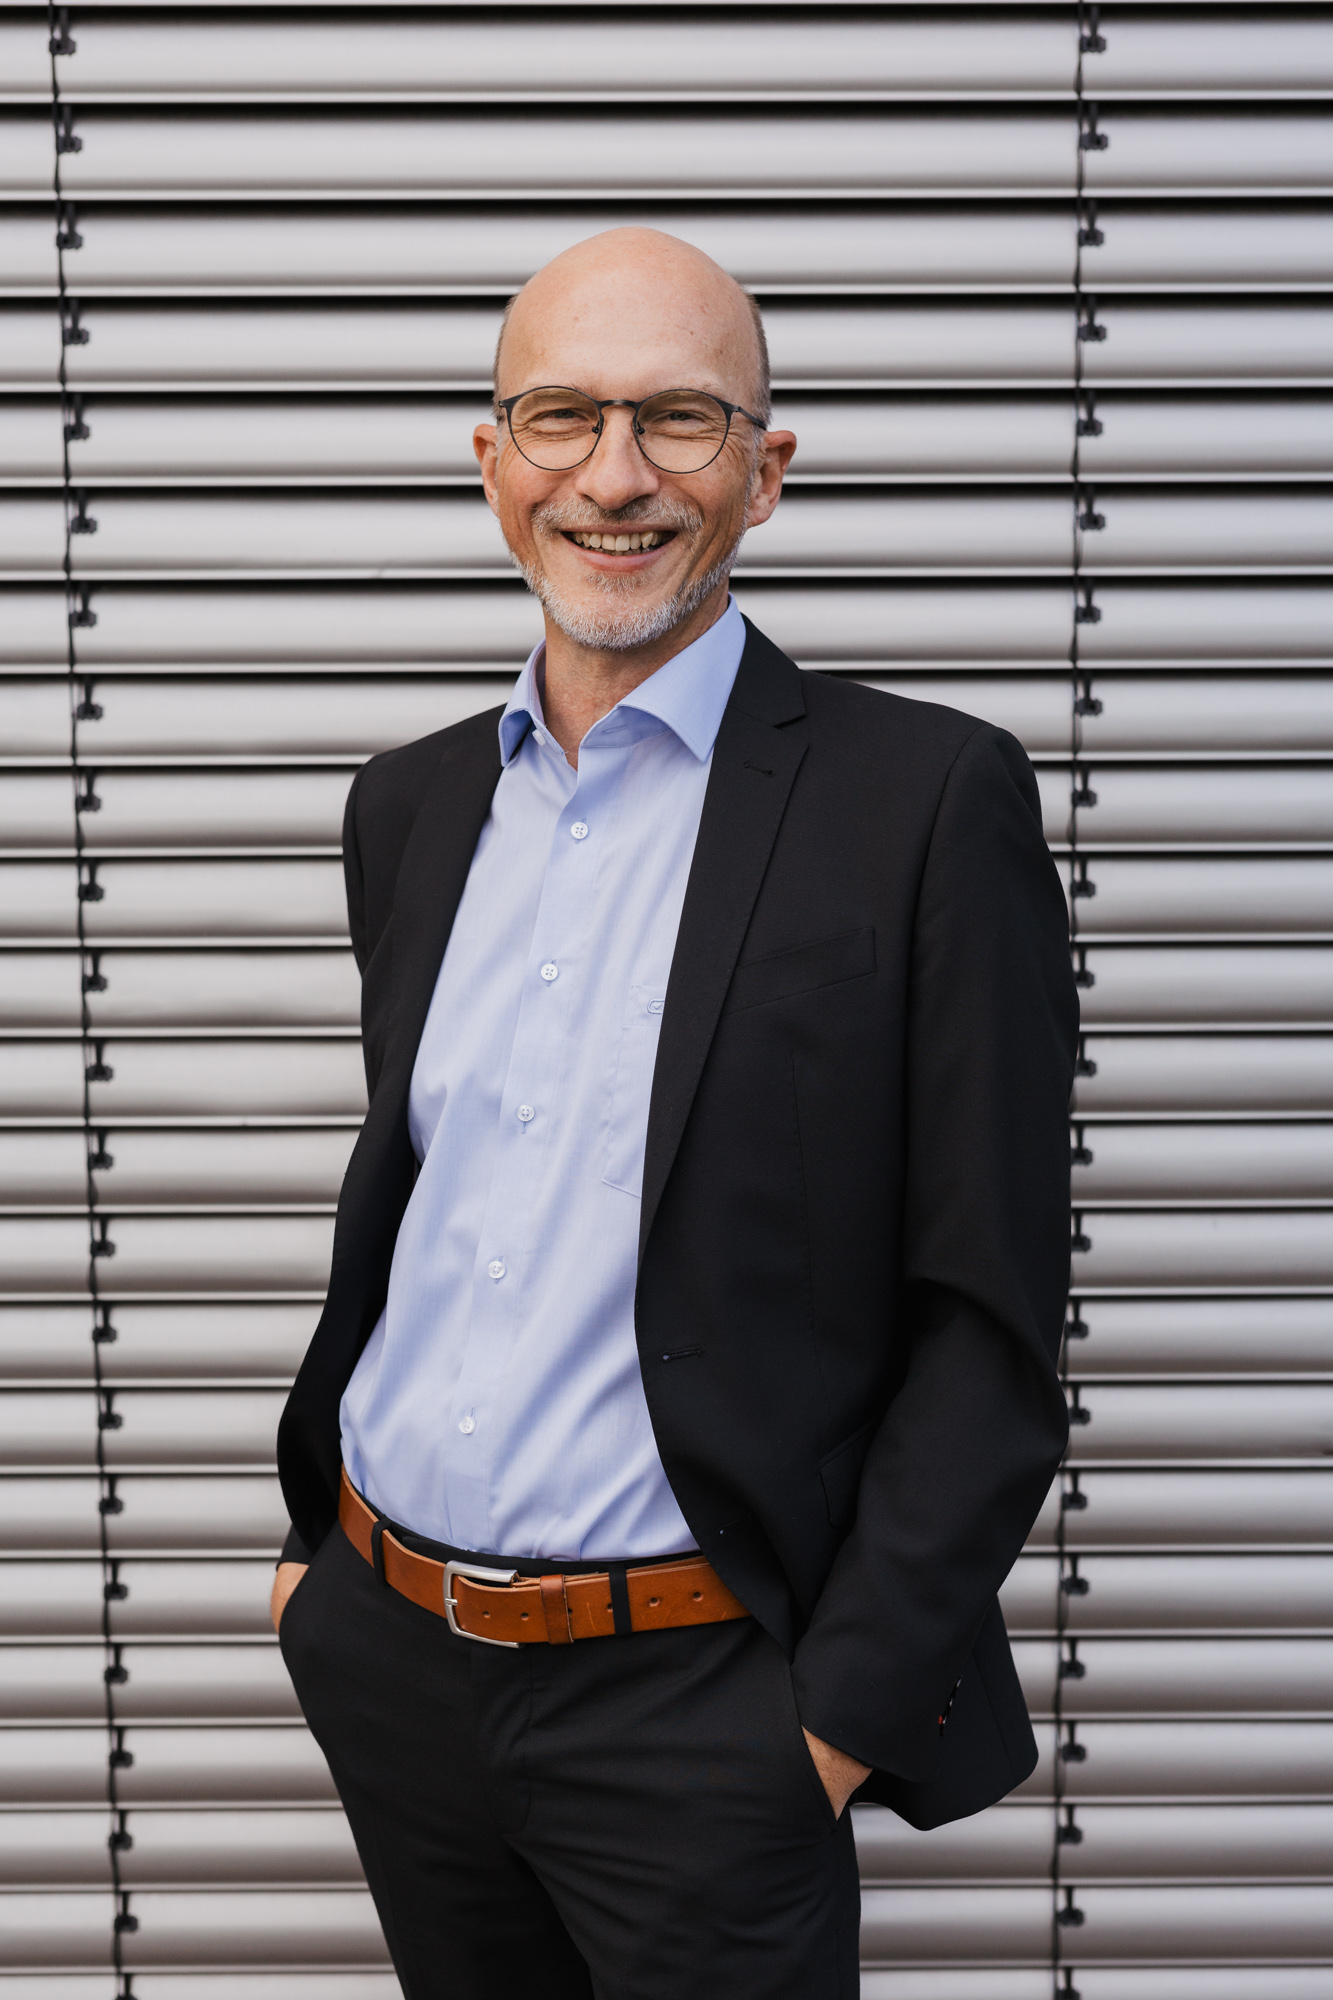 Portraitfoto von Jürgen Schuba, Supervisor in Hameln und Hannover. Er trägt Brille und Sakko und steht vor einem strukturierten Hintergrund.